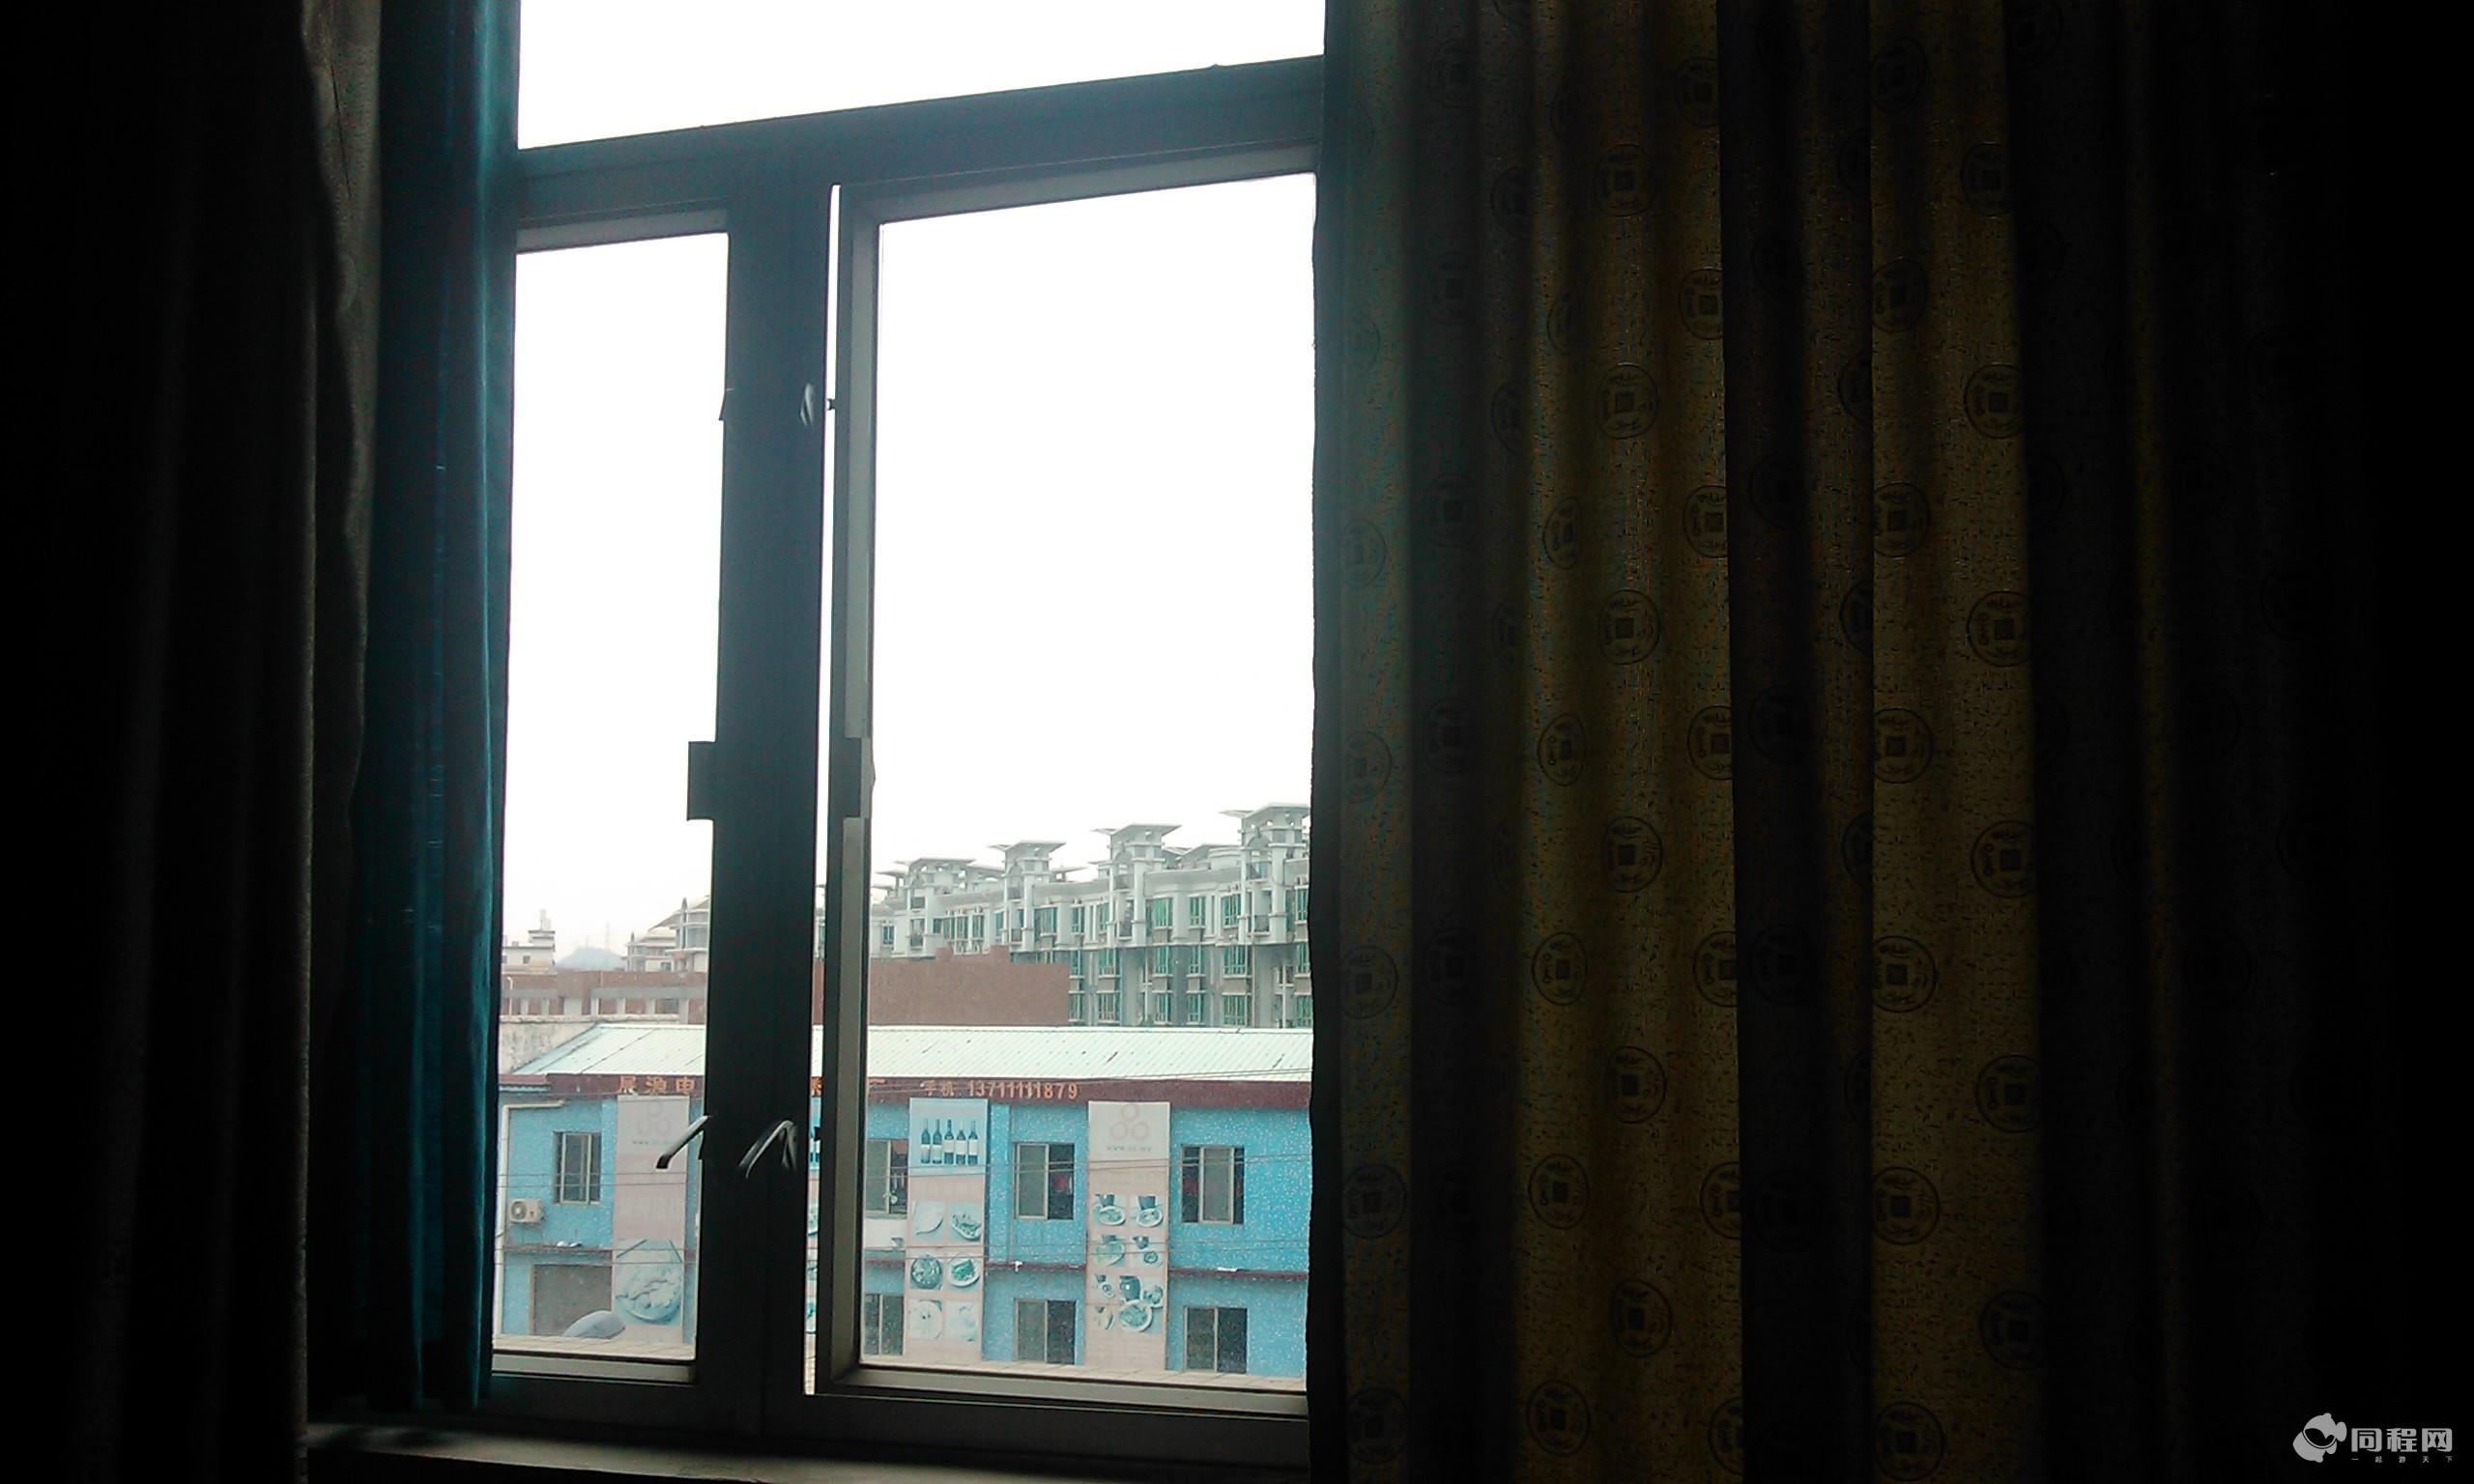 广州良典酒店图片从窗口往外看[由13810aygzfi提供]